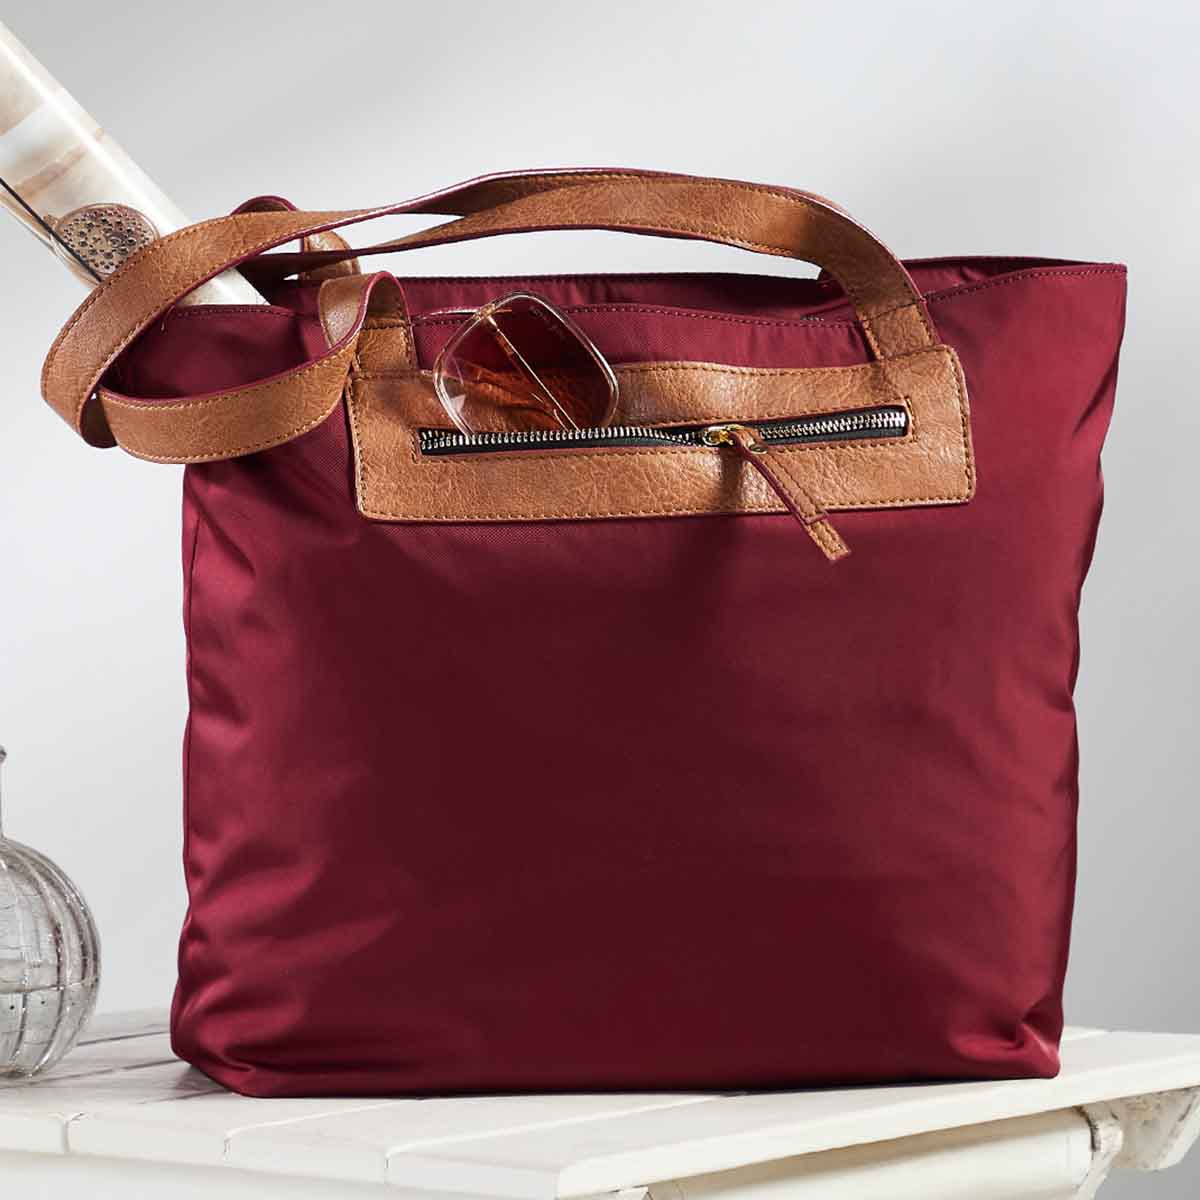 Mona B Handbag for Women | Zipper Tote Bag | Crossbody Sling Bag for Grocery, Shopping, Travel | Shoulder Bags for Women: Set of 2 (Wine)